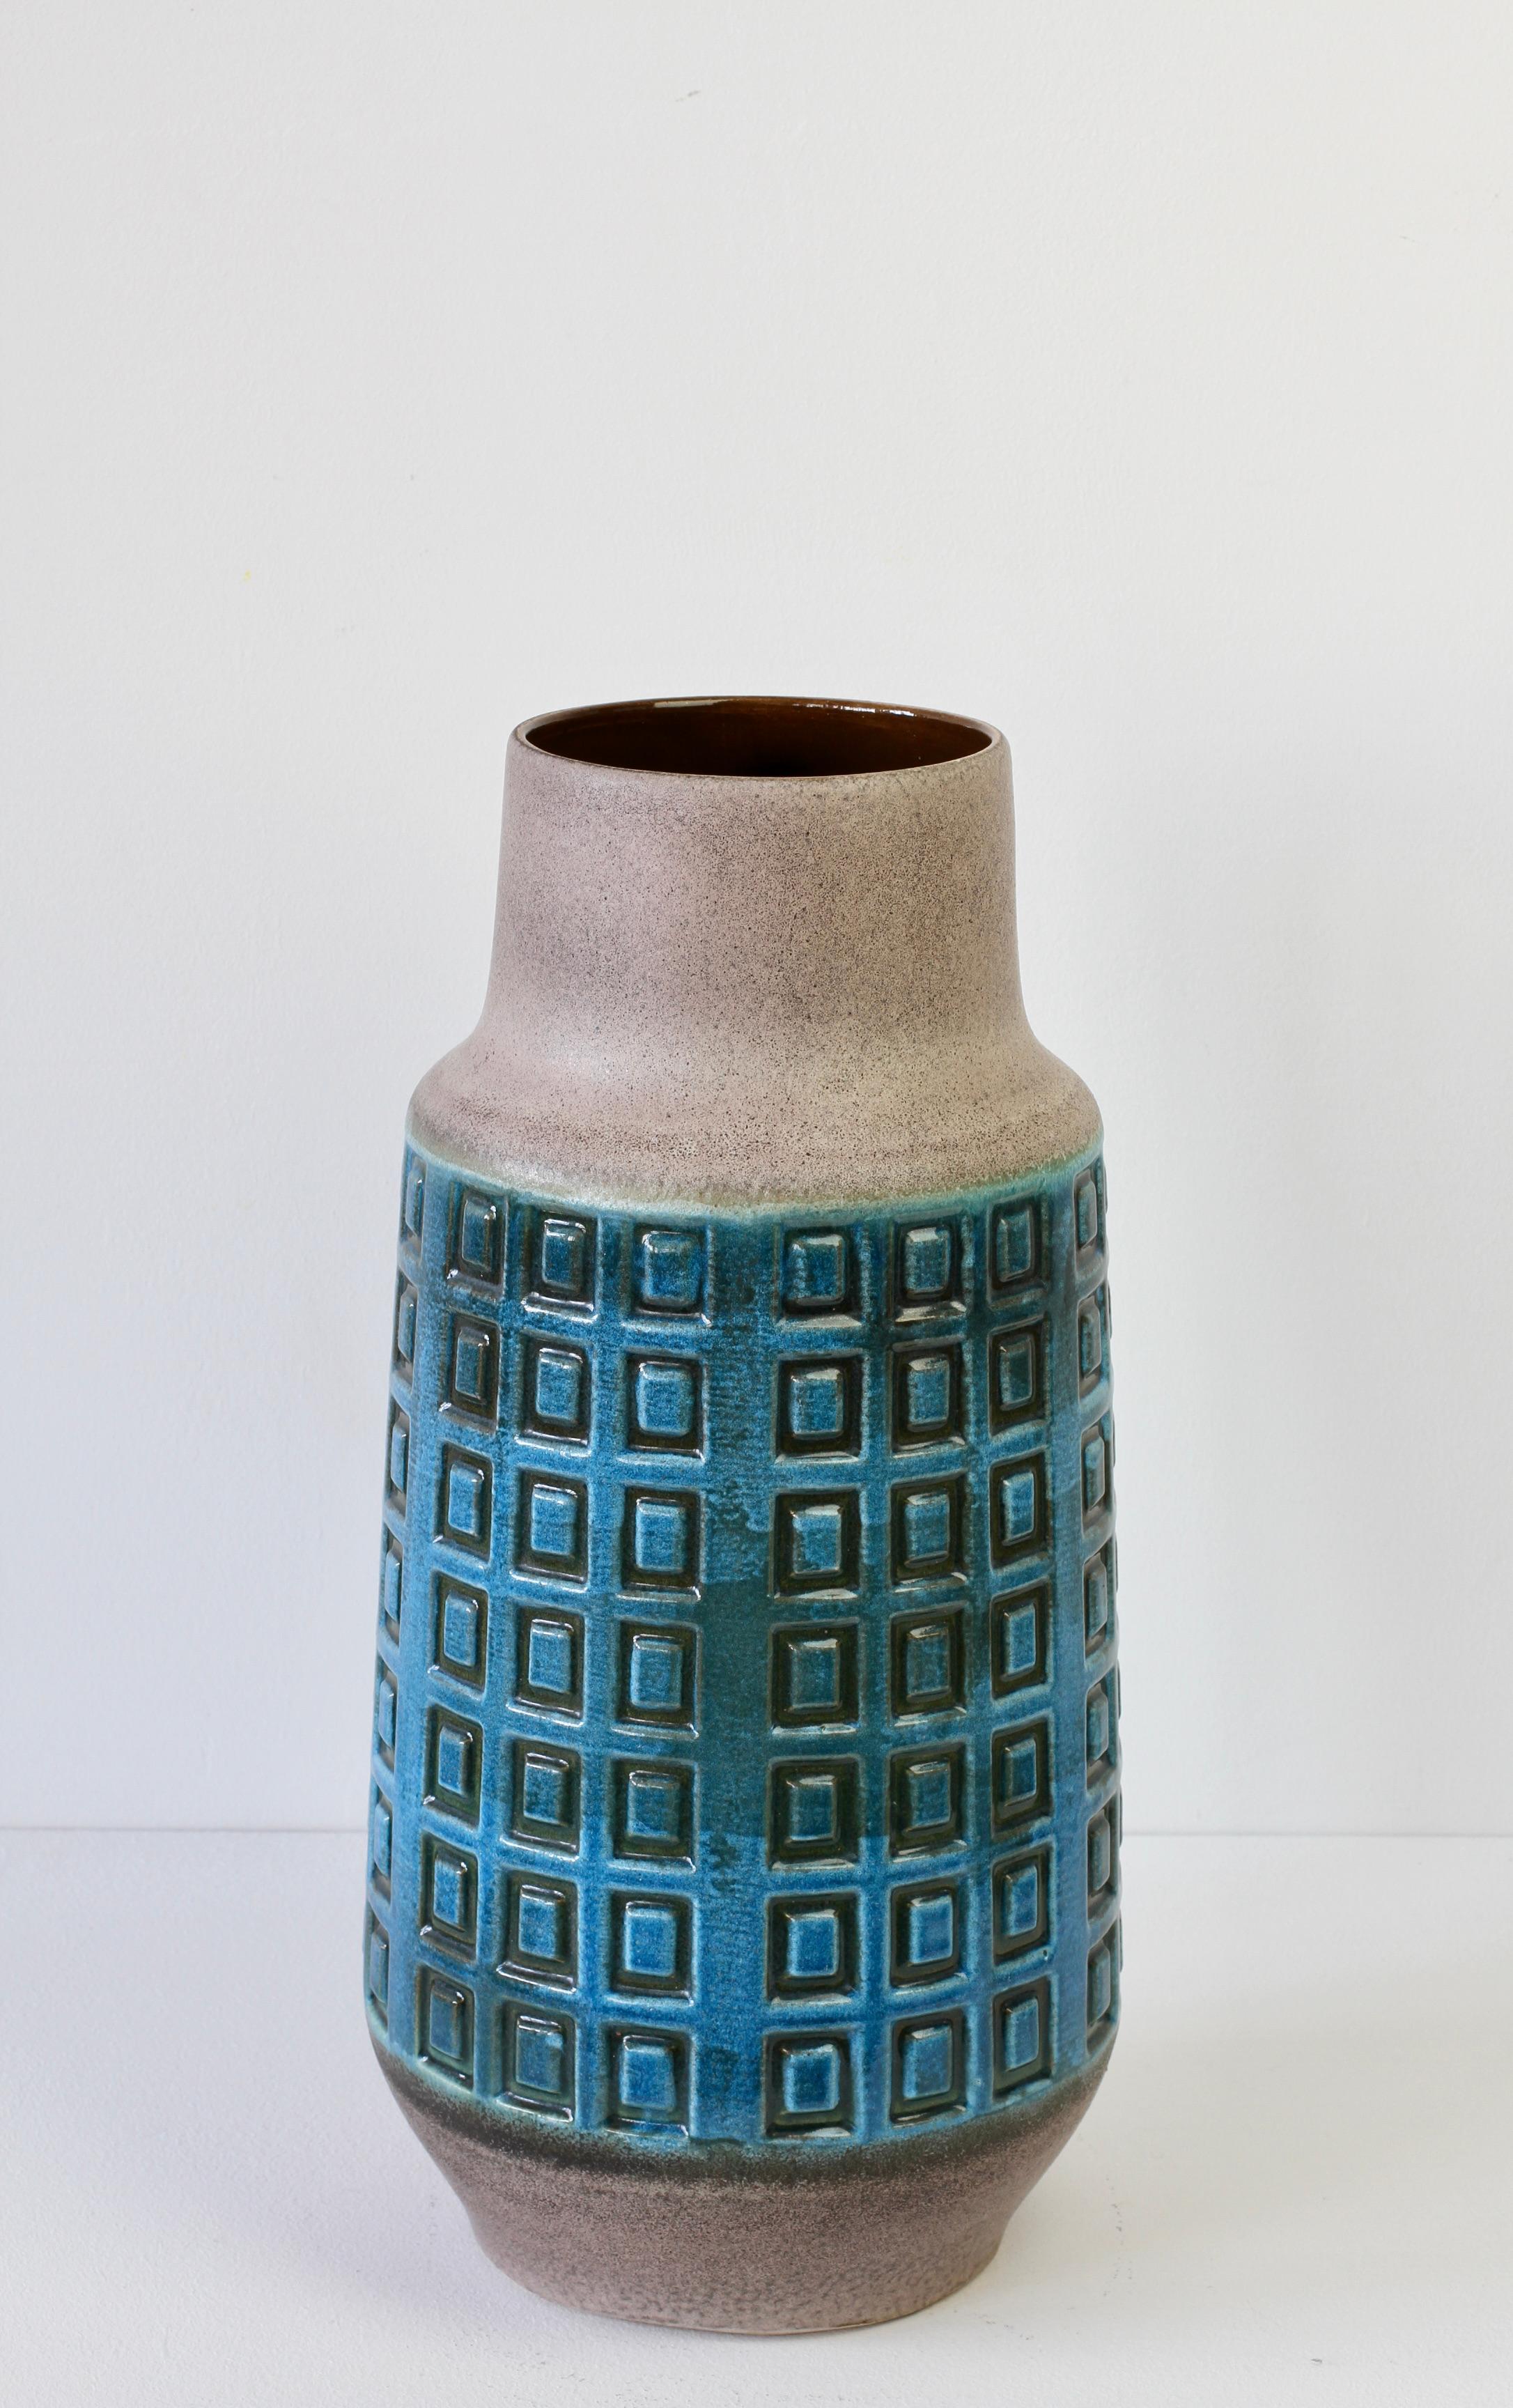 Grand vase ou porte-parapluie sur pied du fabricant ouest-allemand Scheurich Keramik (céramique), vers 1970. Ajoutez une touche de couleur à votre décoration intérieure avec ce magnifique motif de cube carré en relief émaillé bleu et une glaçure